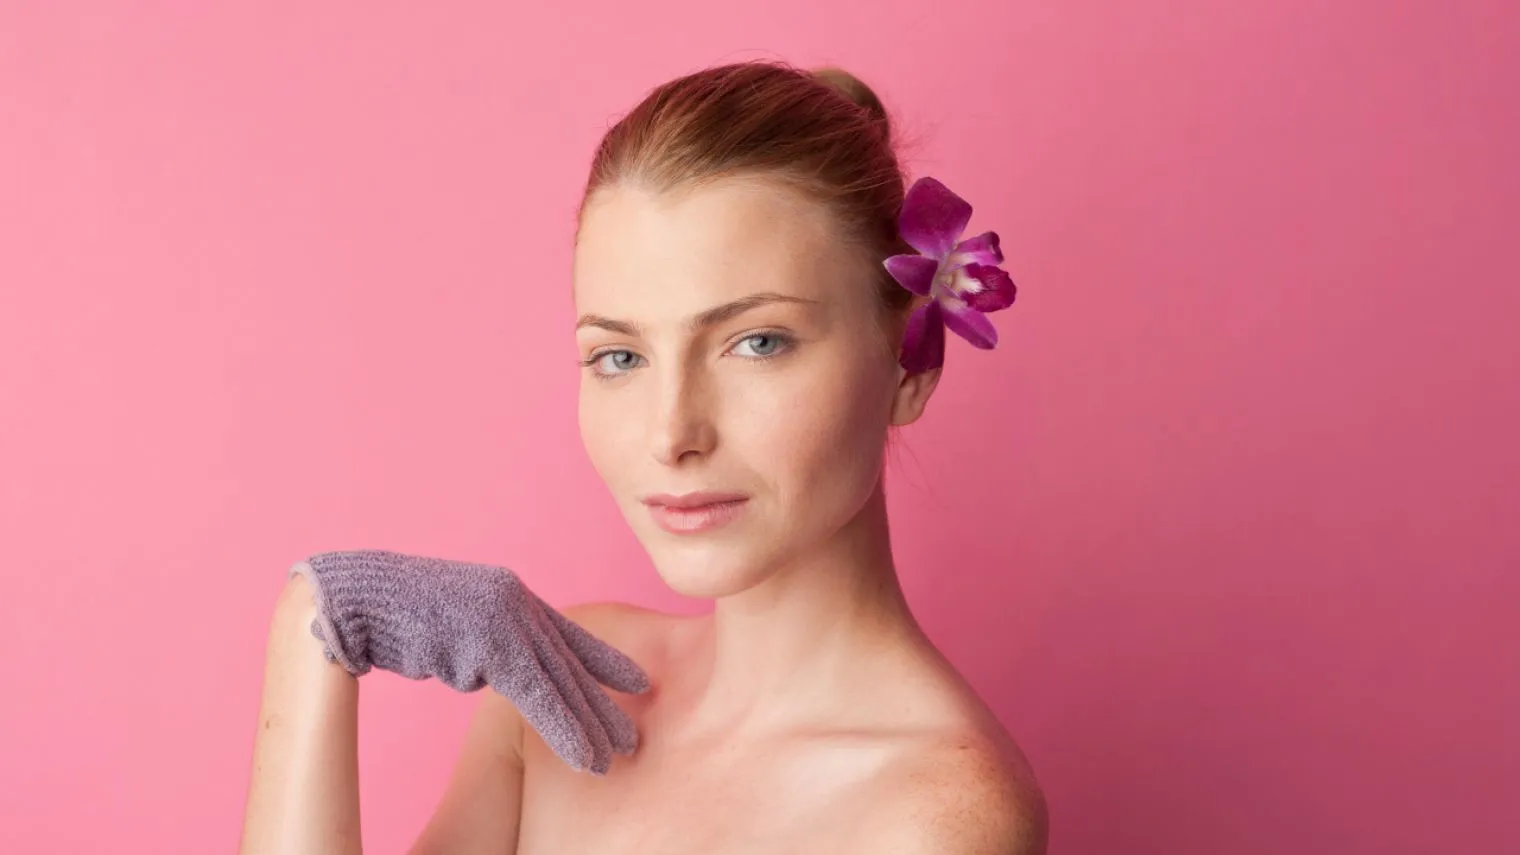 Bath Gloves - Fungsi dan Kelebihan Menggunakannya